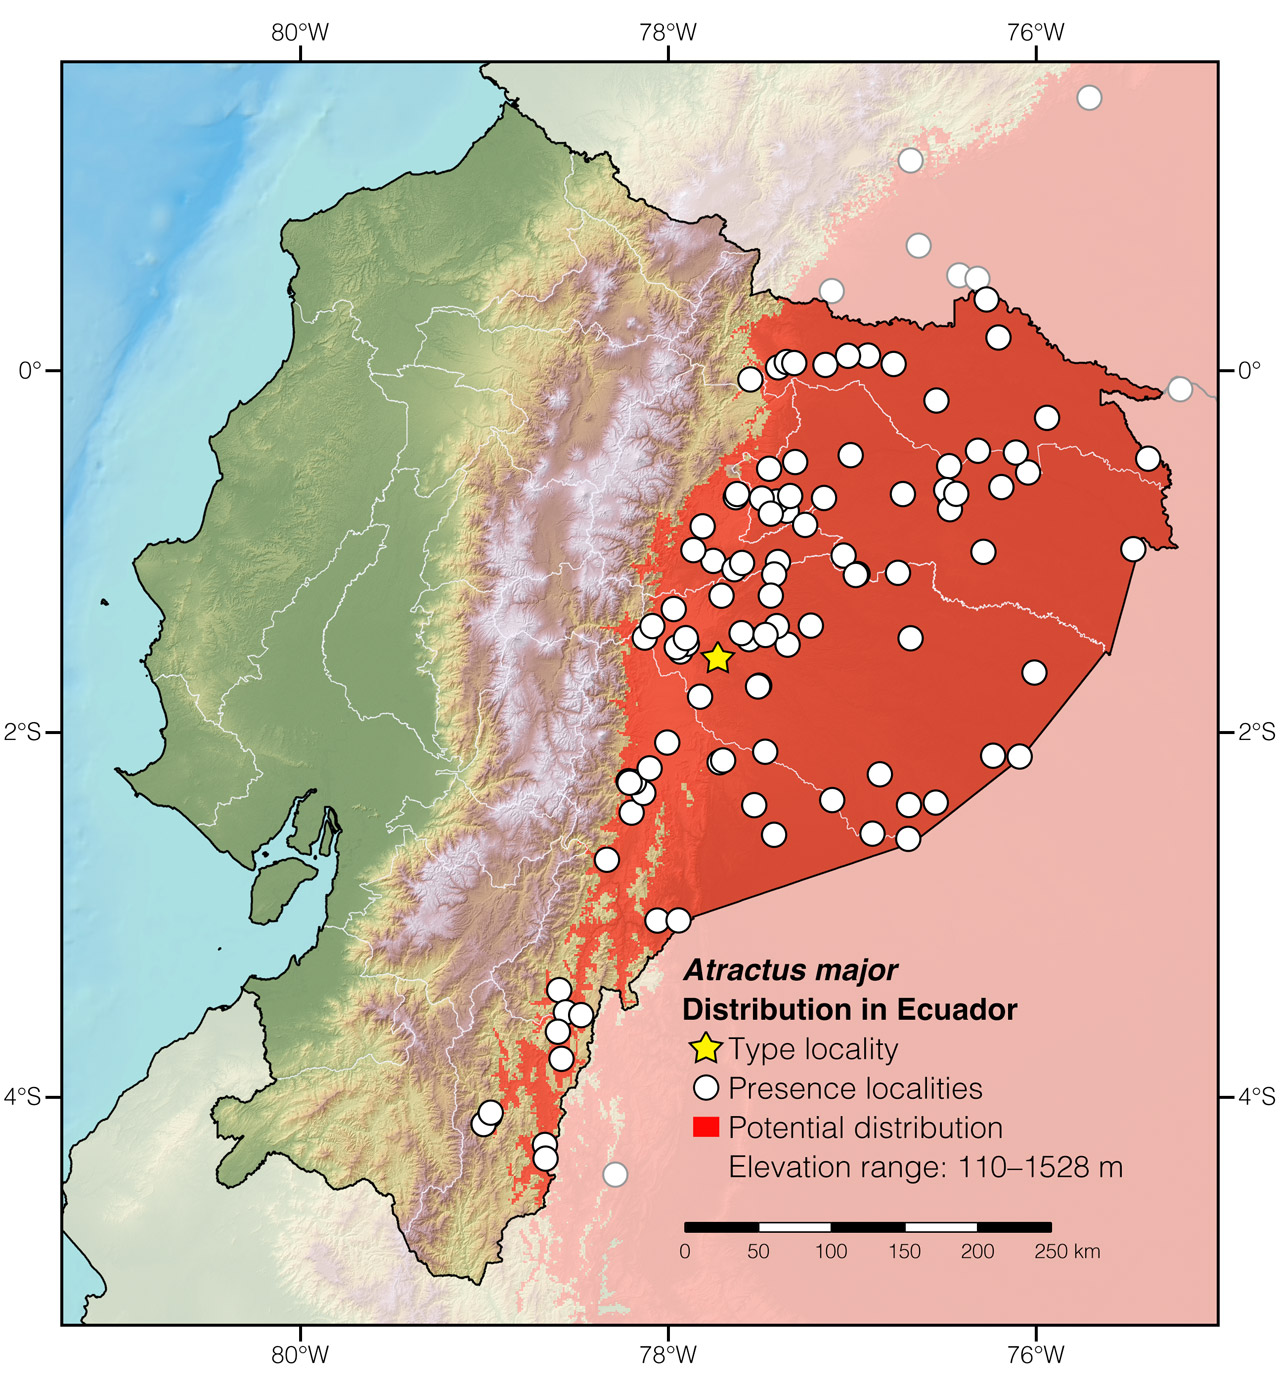 Distribution of Atractus major in Ecuador